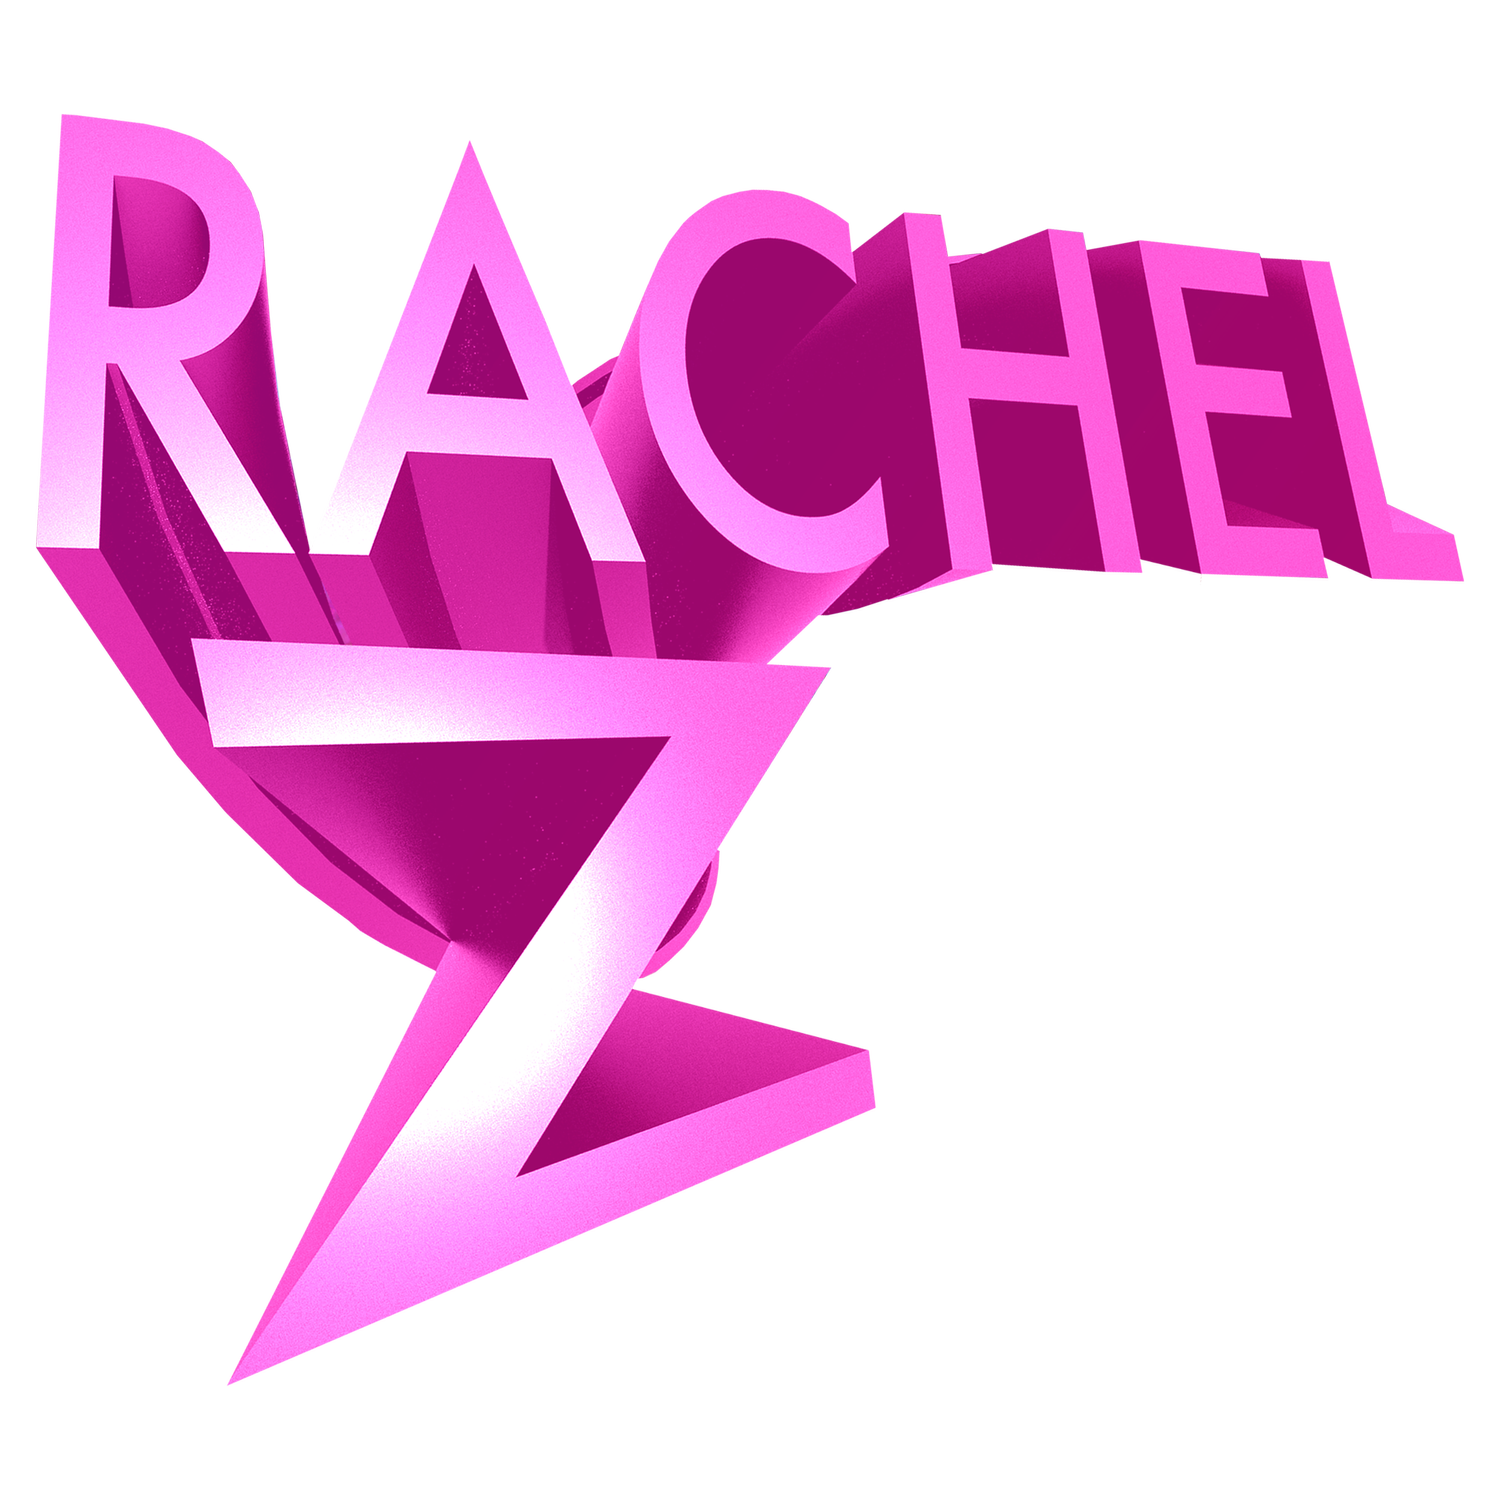 Rachel Z